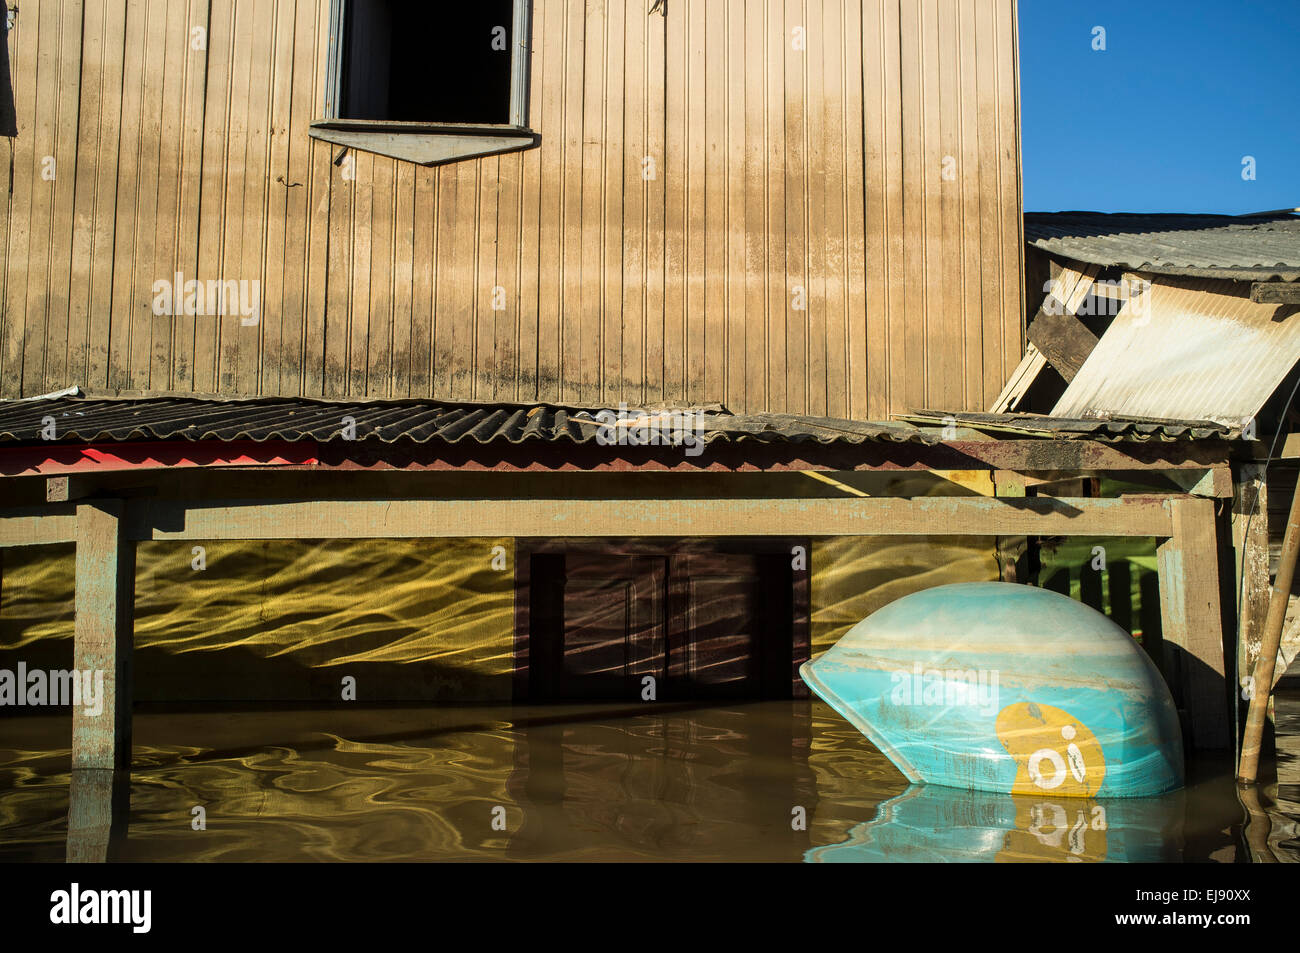 2015 Inondations en Amazonie brésilienne. inondé cabine téléphonique et la maison de quartier Triangulo Novo Rio Branco, Acre, ville de l'État. Les inondations ont touché des milliers de personnes dans l'Etat d'Acre, dans le nord du Brésil, depuis le 23 février 2015, lorsque certaines des rivières de l'état, en particulier l'Acre, la rivière a débordé. De plus fortes précipitations a forcé les niveaux de la rivière plus haut encore, et le 03 mars 2015, le gouvernement fédéral du Brésil a déclaré l'état d'urgence dans l'état d'Acre, où les conditions d'inondations situation a été décrite comme la pire en 132 ans. Banque D'Images